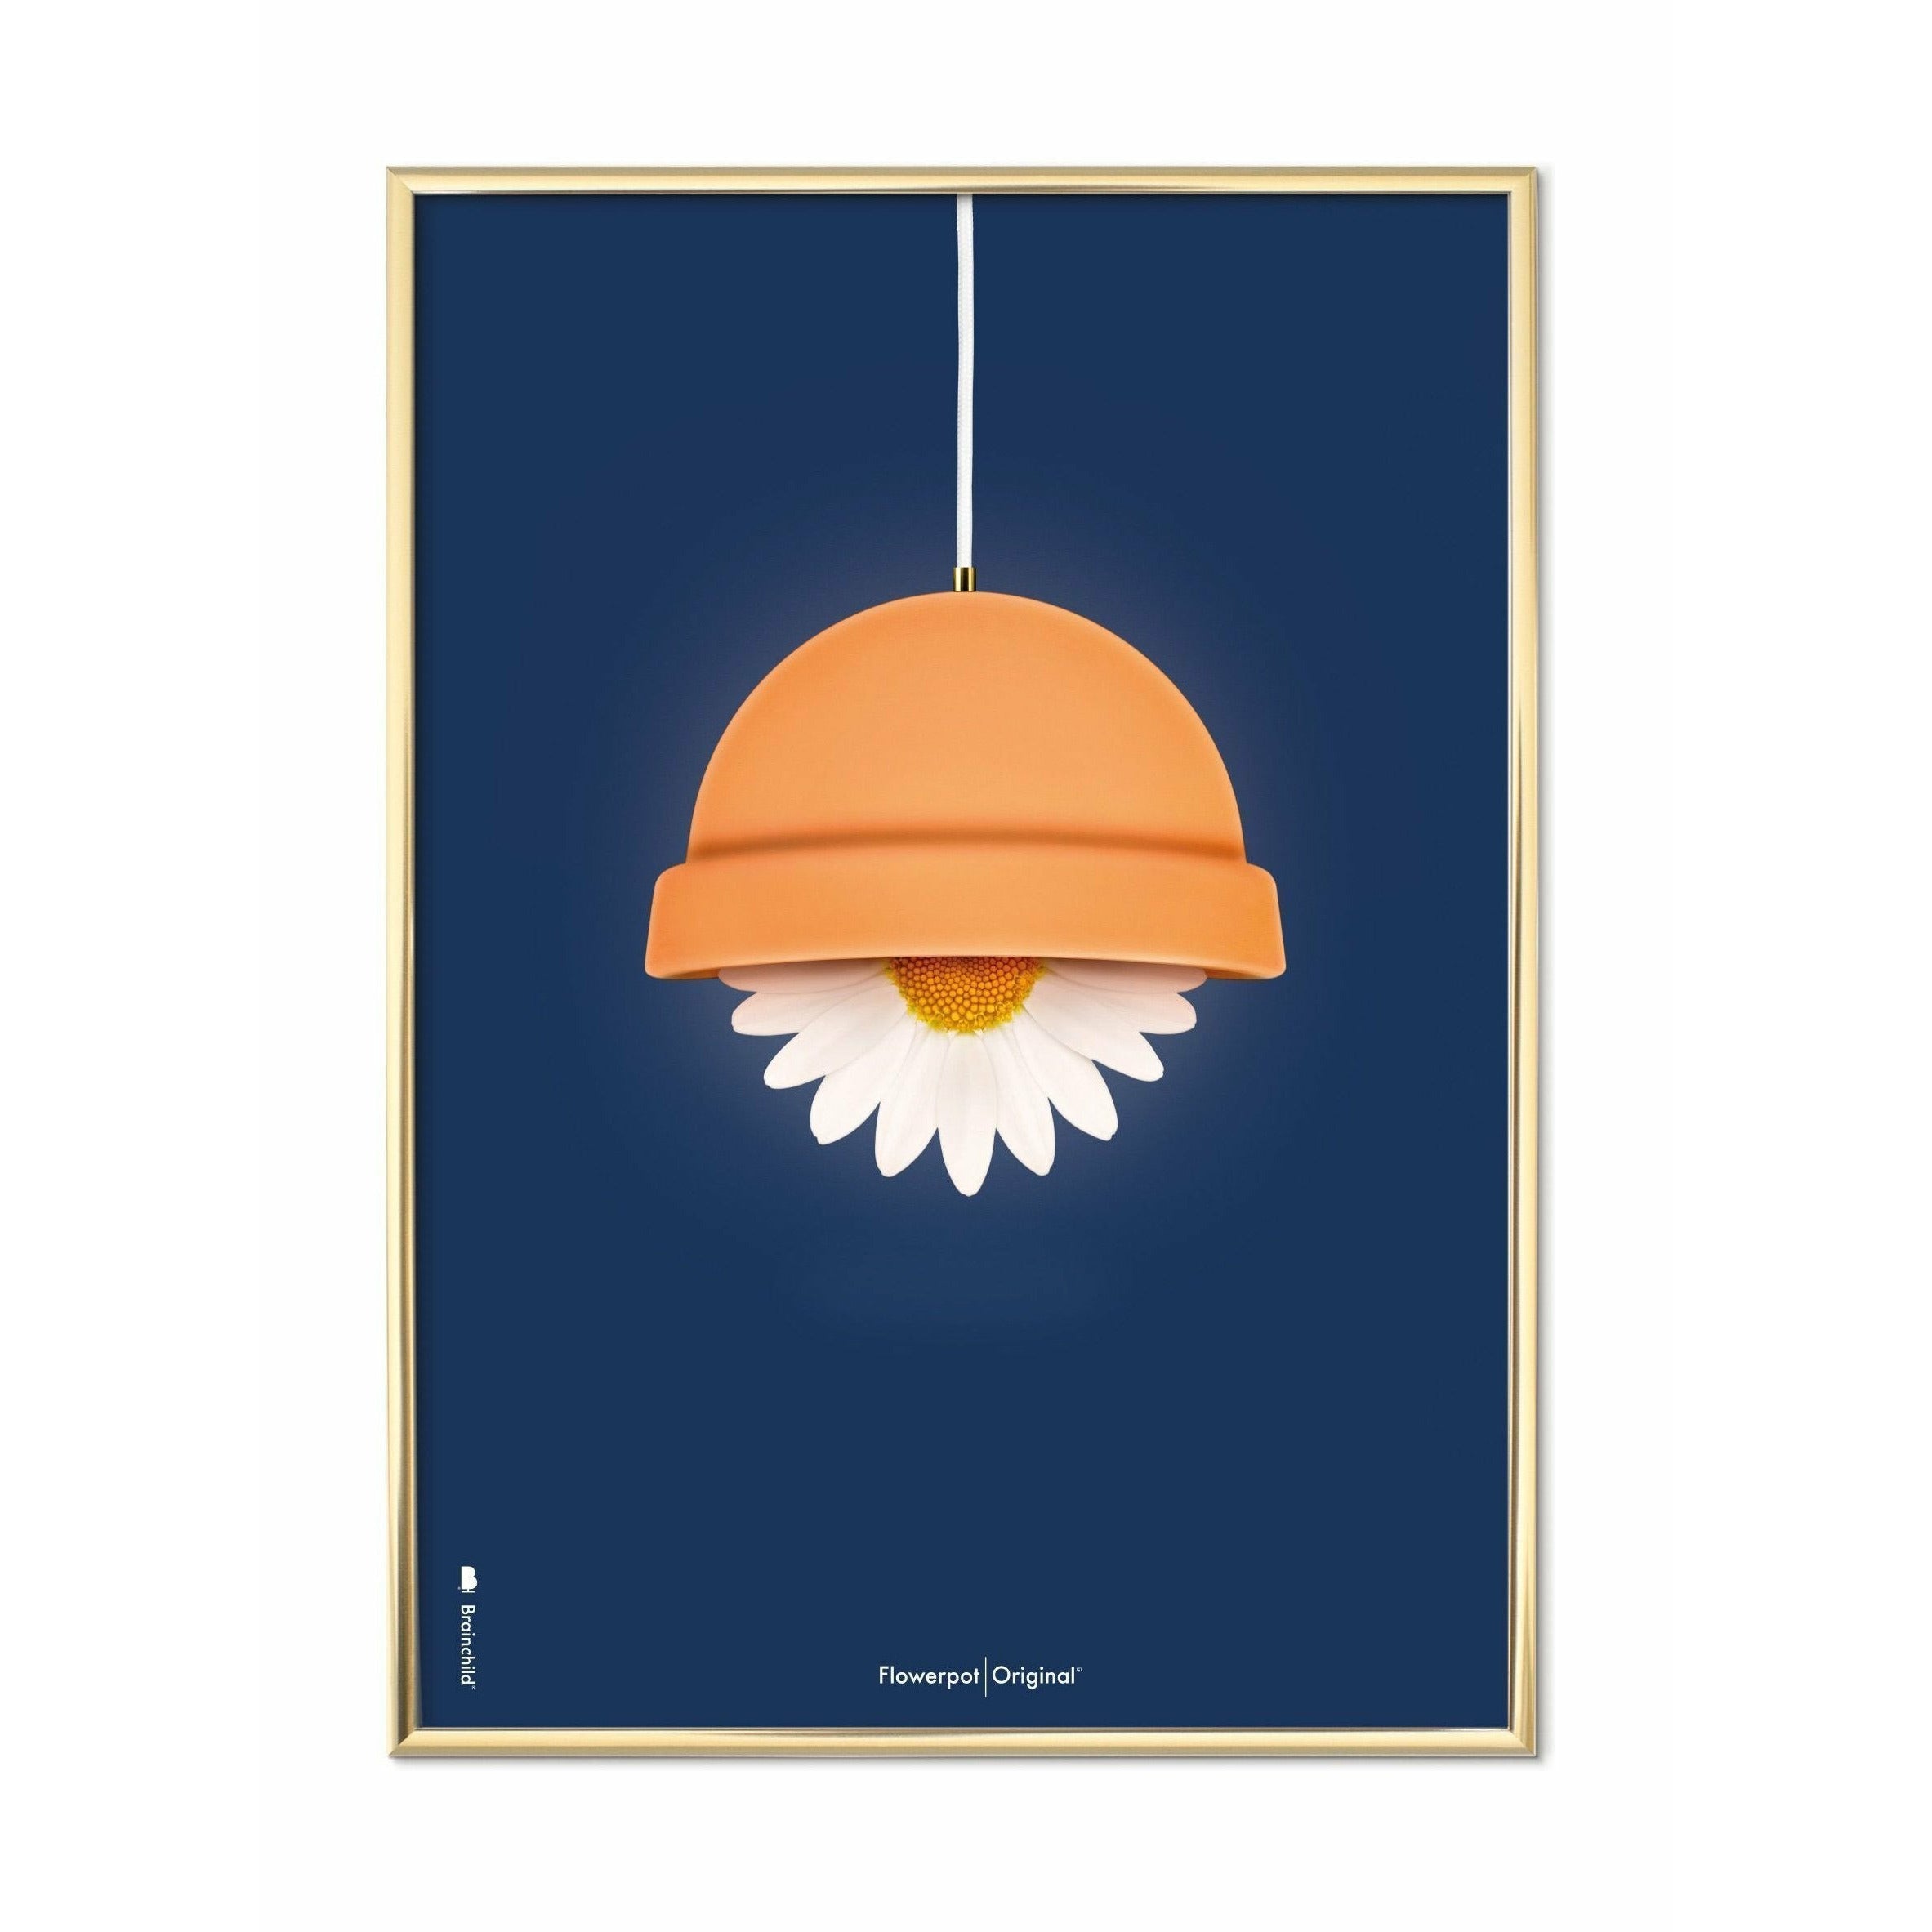 Brainchild Flowerpot Classic Poster, Brass Frame 70x100 Cm, Dark Blue Background